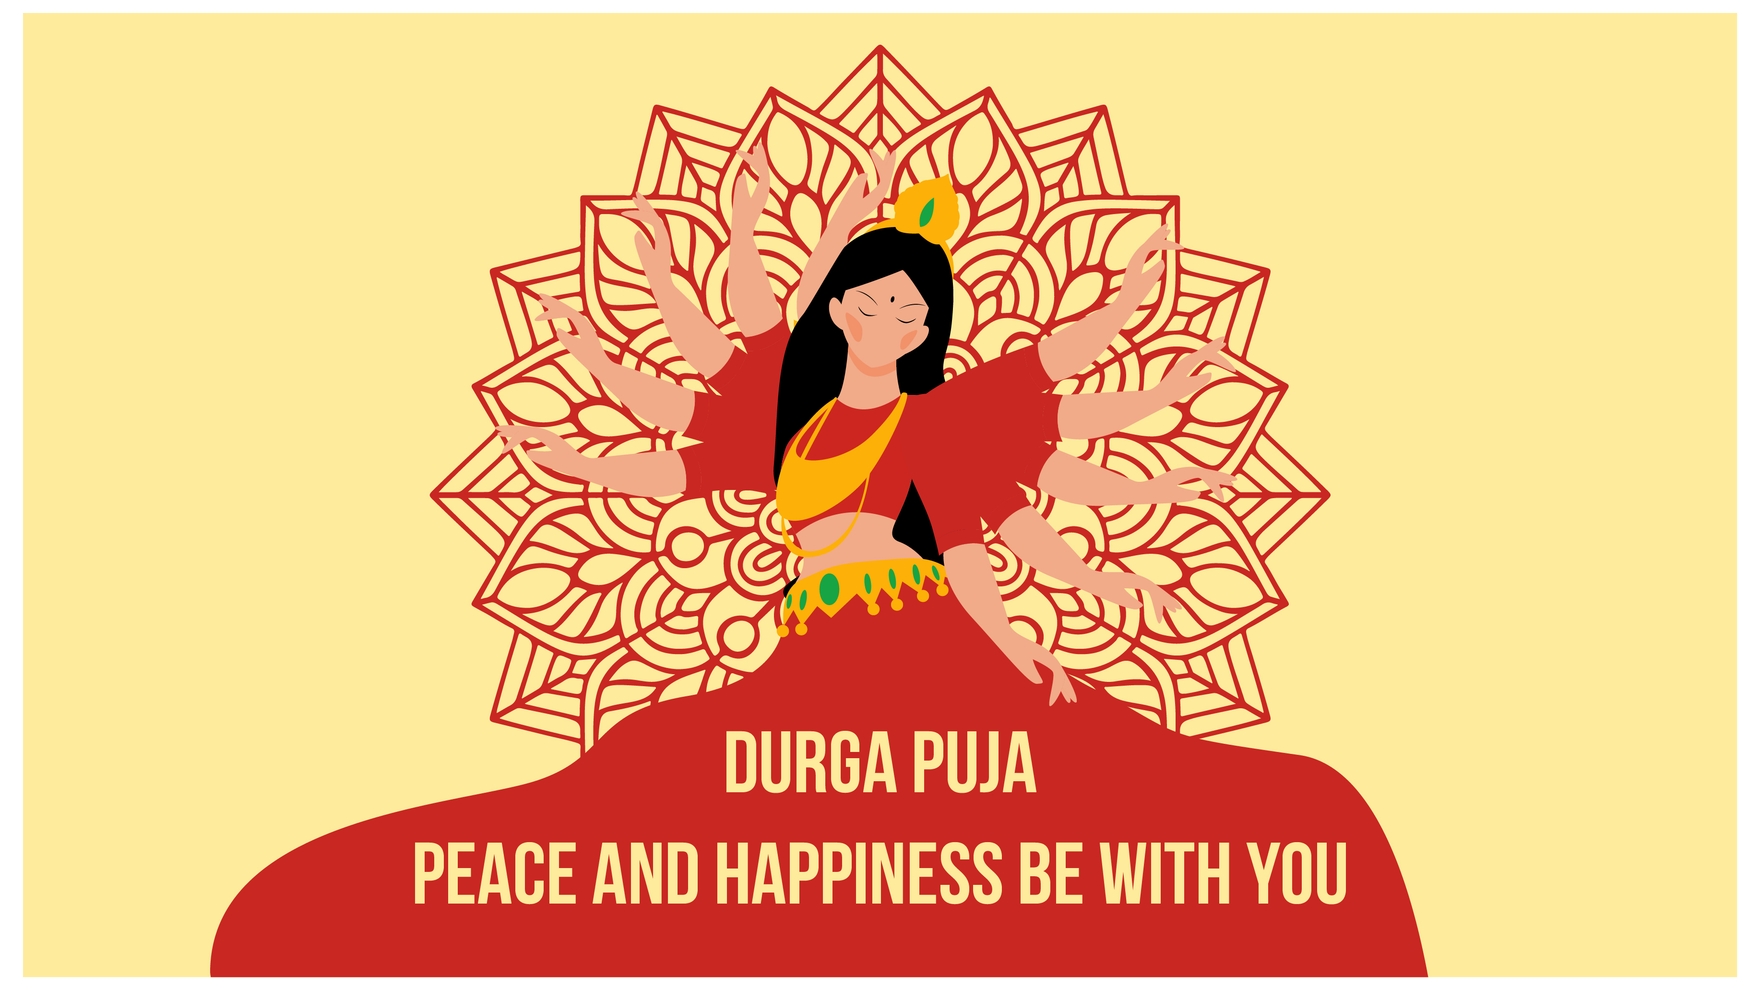 Durga Puja Flyer Background: Bạn có lỡ bỏ qua bất kỳ hình nền Durga Puja đẹp nào cho thiệp mời hay poster? Không sao cả! Hãy khám phá bộ sưu tập các bối cảnh cho Flyers chuyên nghiệp nhất, giúp bạn mang đến một sự kiện Lễ hội Durga Puja tuyệt vời và đầy ý nghĩa!